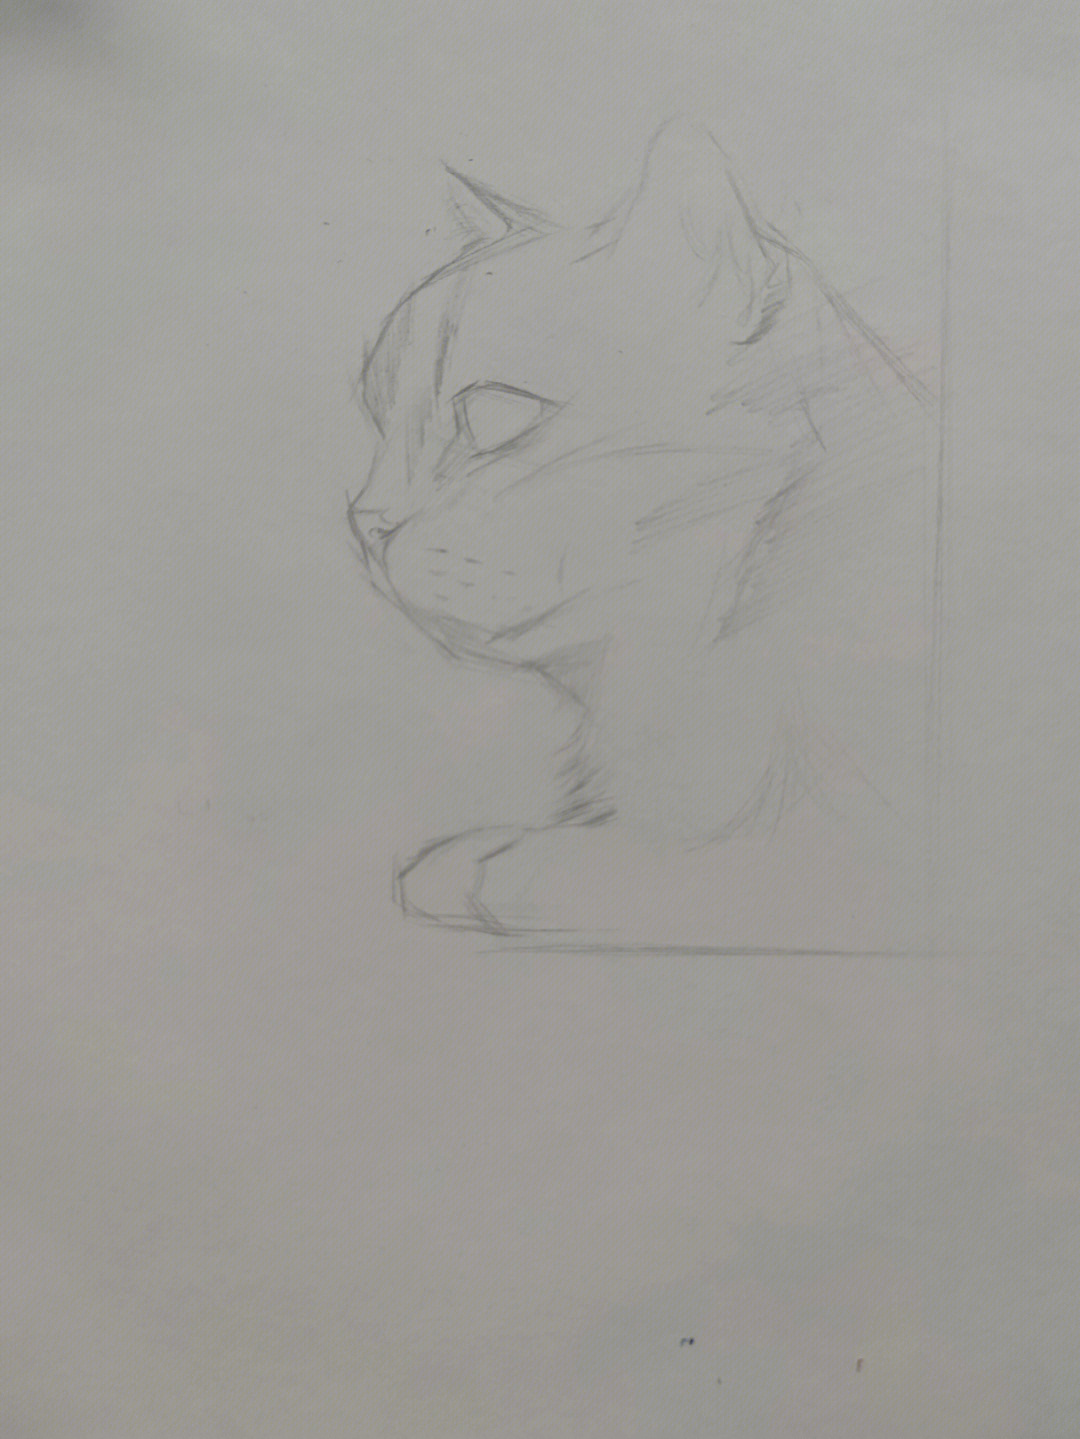 素描猫背面图片